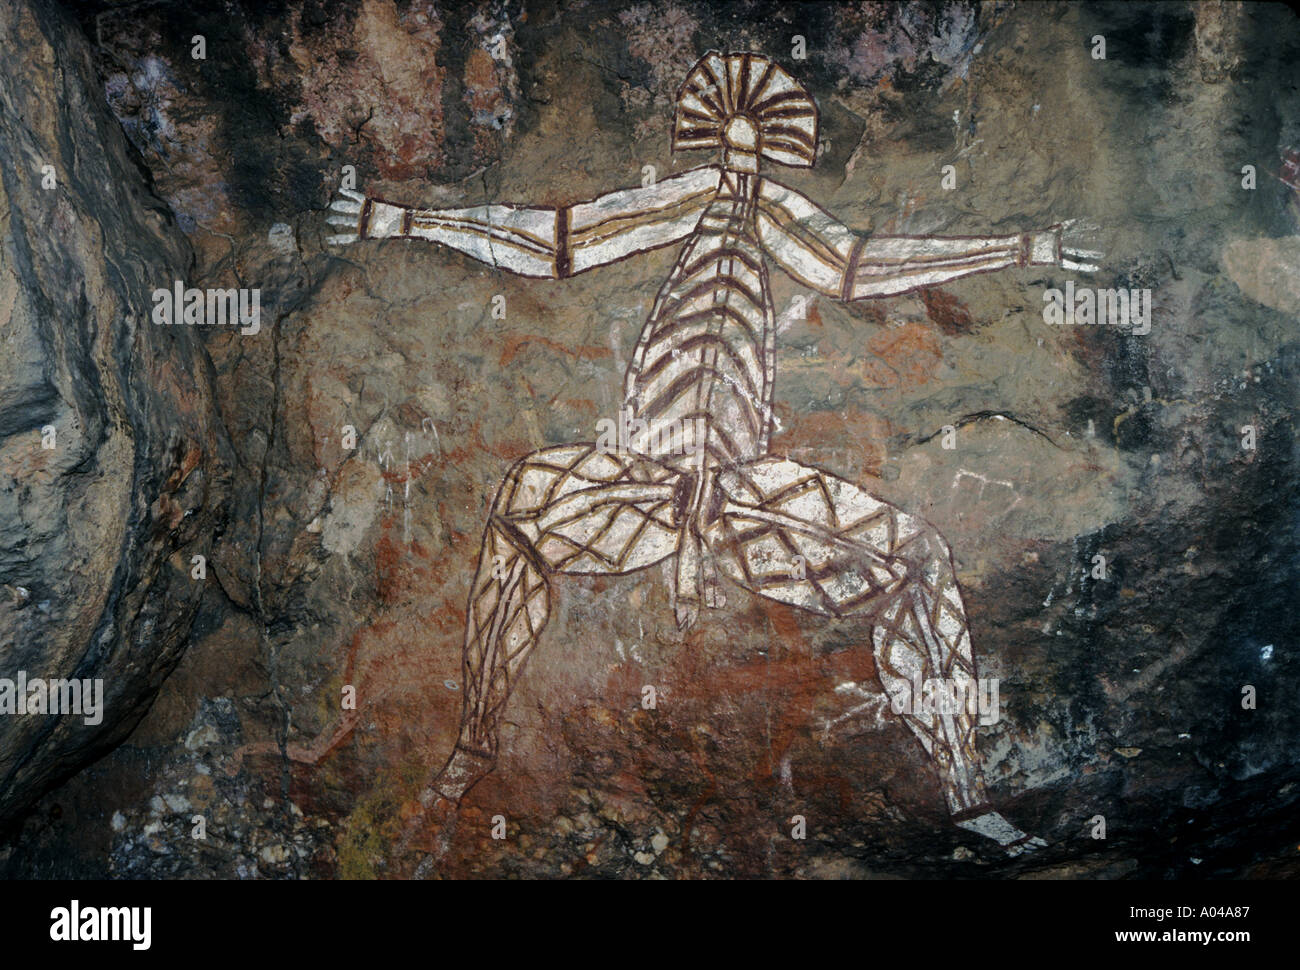 Aboriginal art peinture rupestre Nourlangie Rock NT Australie Banque D'Images